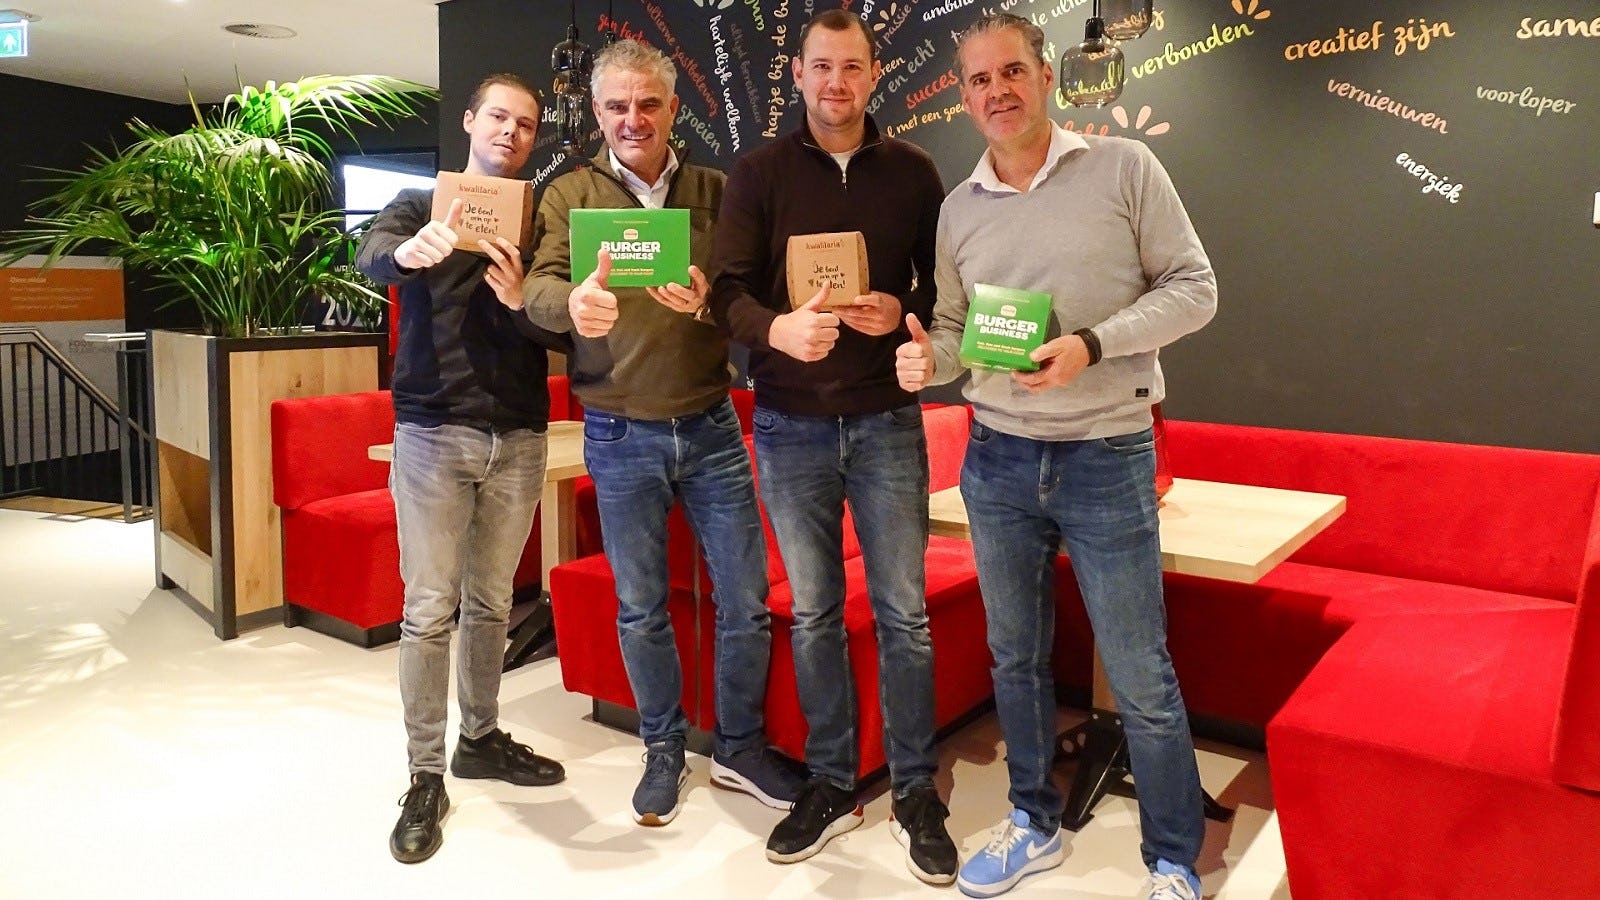 Valentijn Prince (oprichter Burger Business), Antonio Stroes (eigenaar FFC), Daan van Loon (oprichter Burger Business), Joep Leemans (Algemeen directeur FFC).